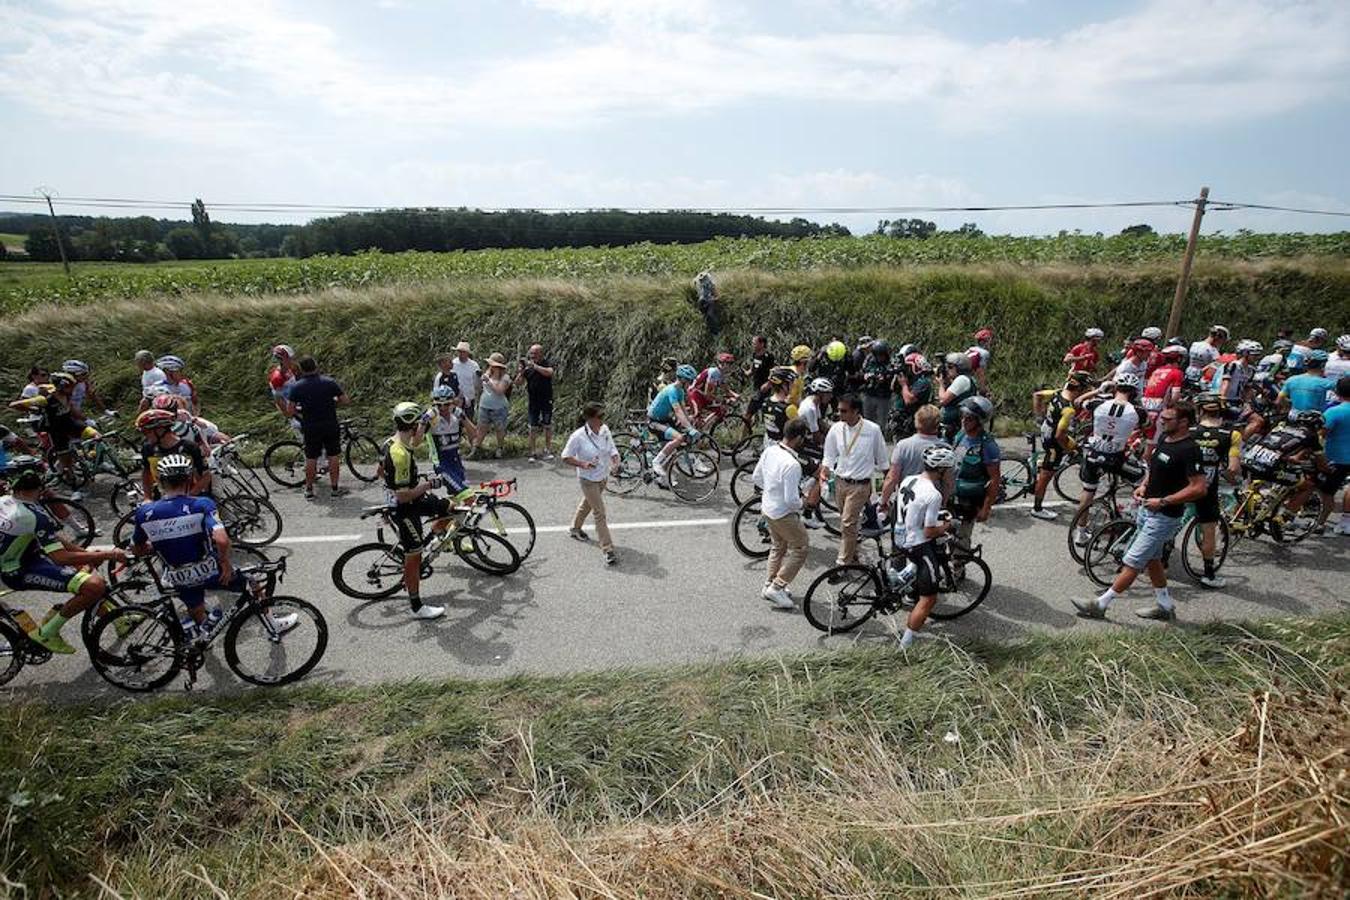 Un grupo de personas ha interrumpido la etapa ciclista en demanda de más ayudas para las zonas rurales del país